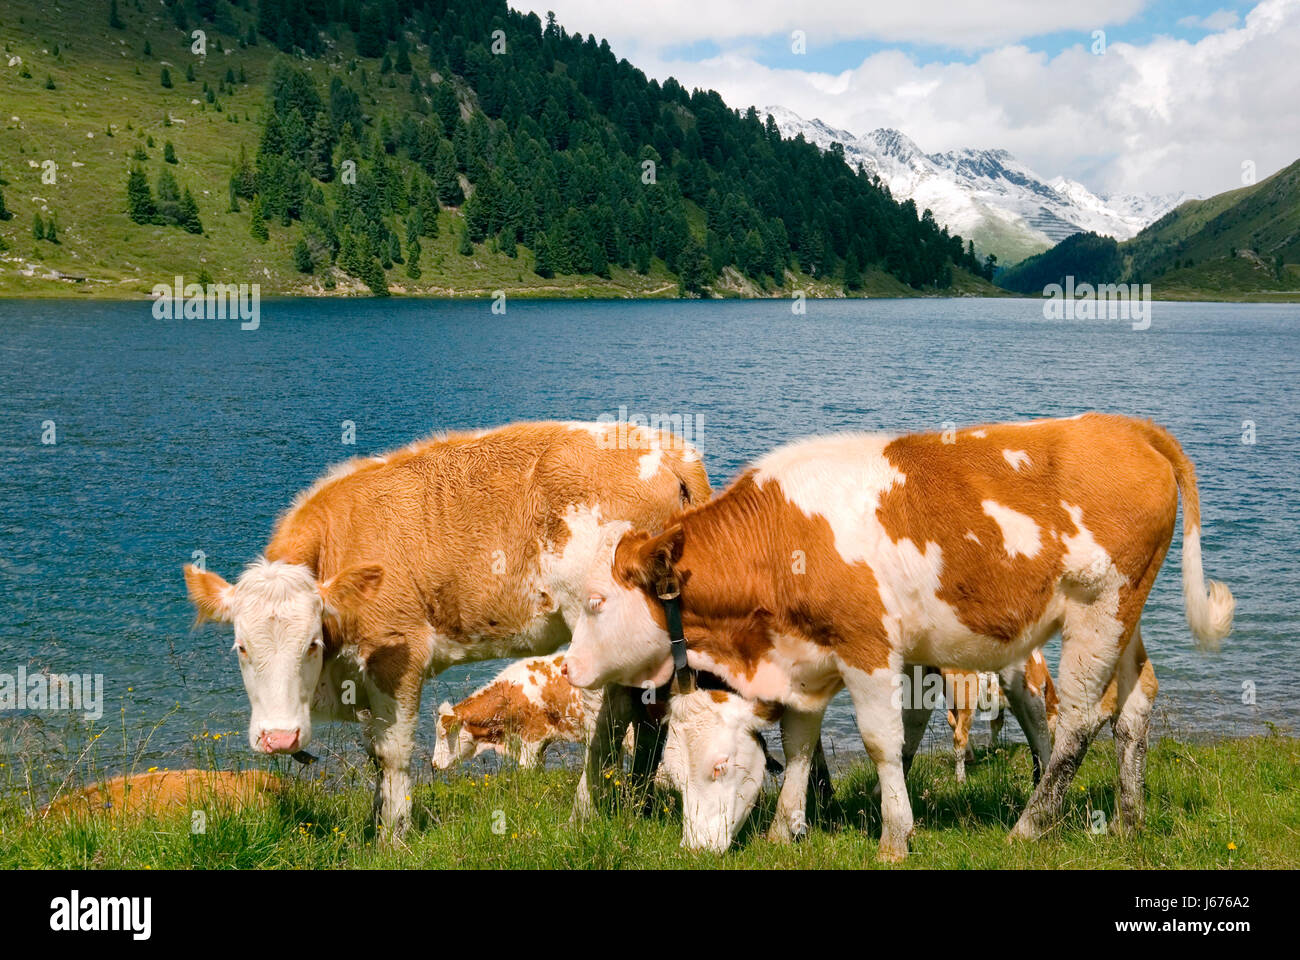 Animali bovini di allevamento di mucche di acqua dolce entroterra del lago acqua acqua natura willow Foto Stock